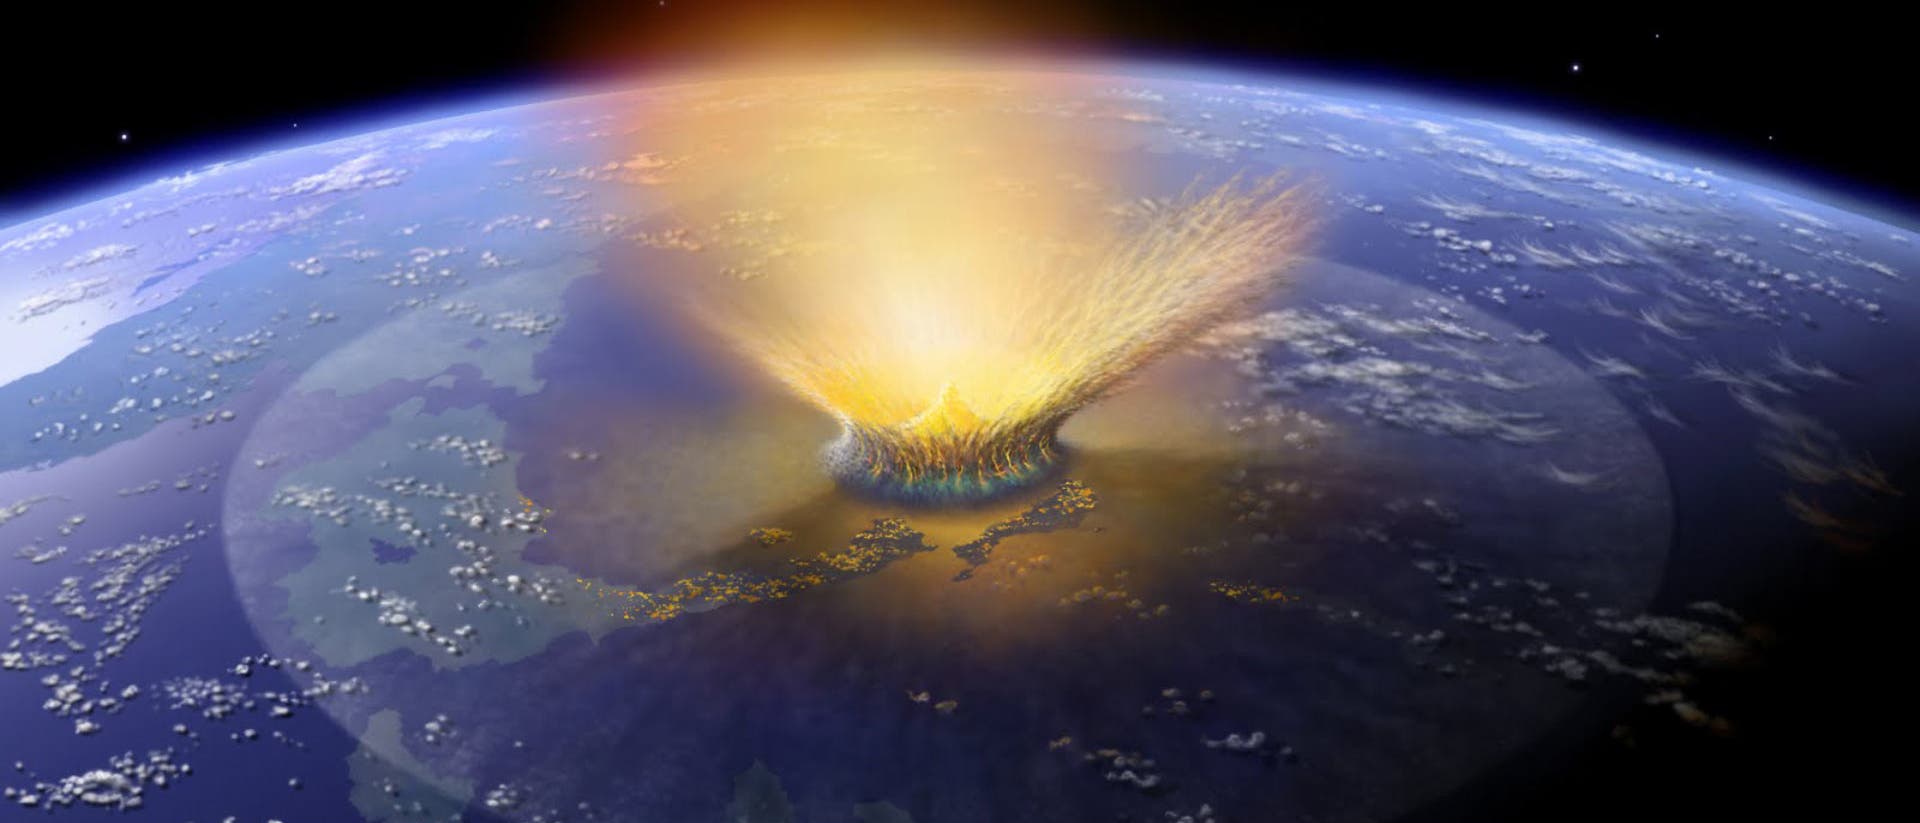 Asteroiden-Einschlag auf der Erde (künstlerische Darstellung)